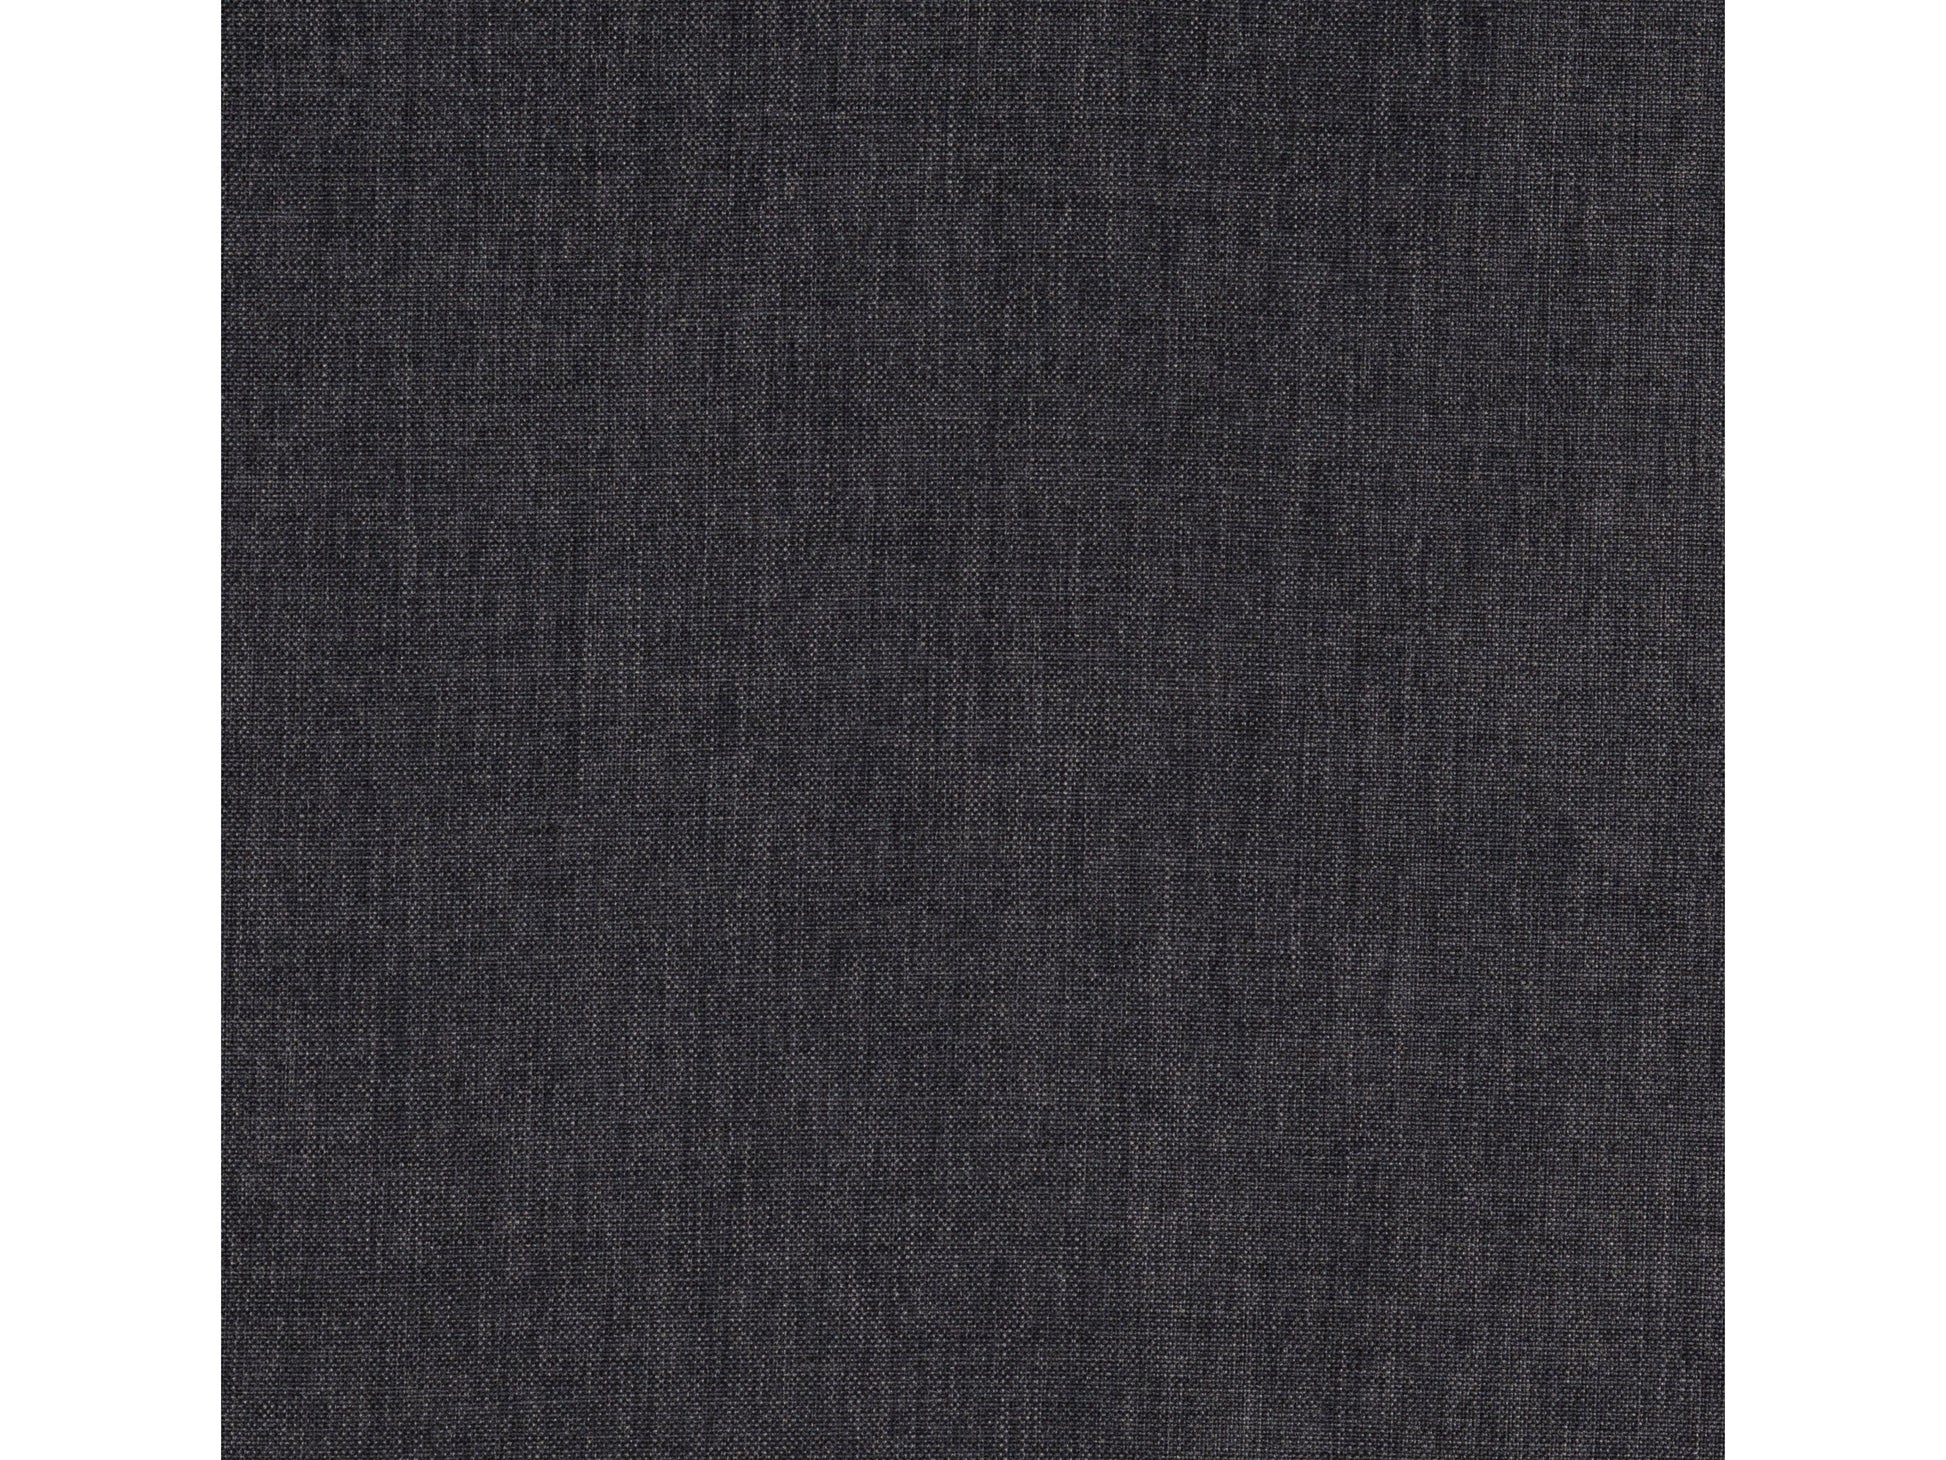 dark grey Convertible Futon Sofa Bed Yorkton collection detail image by CorLiving#color_dark-grey